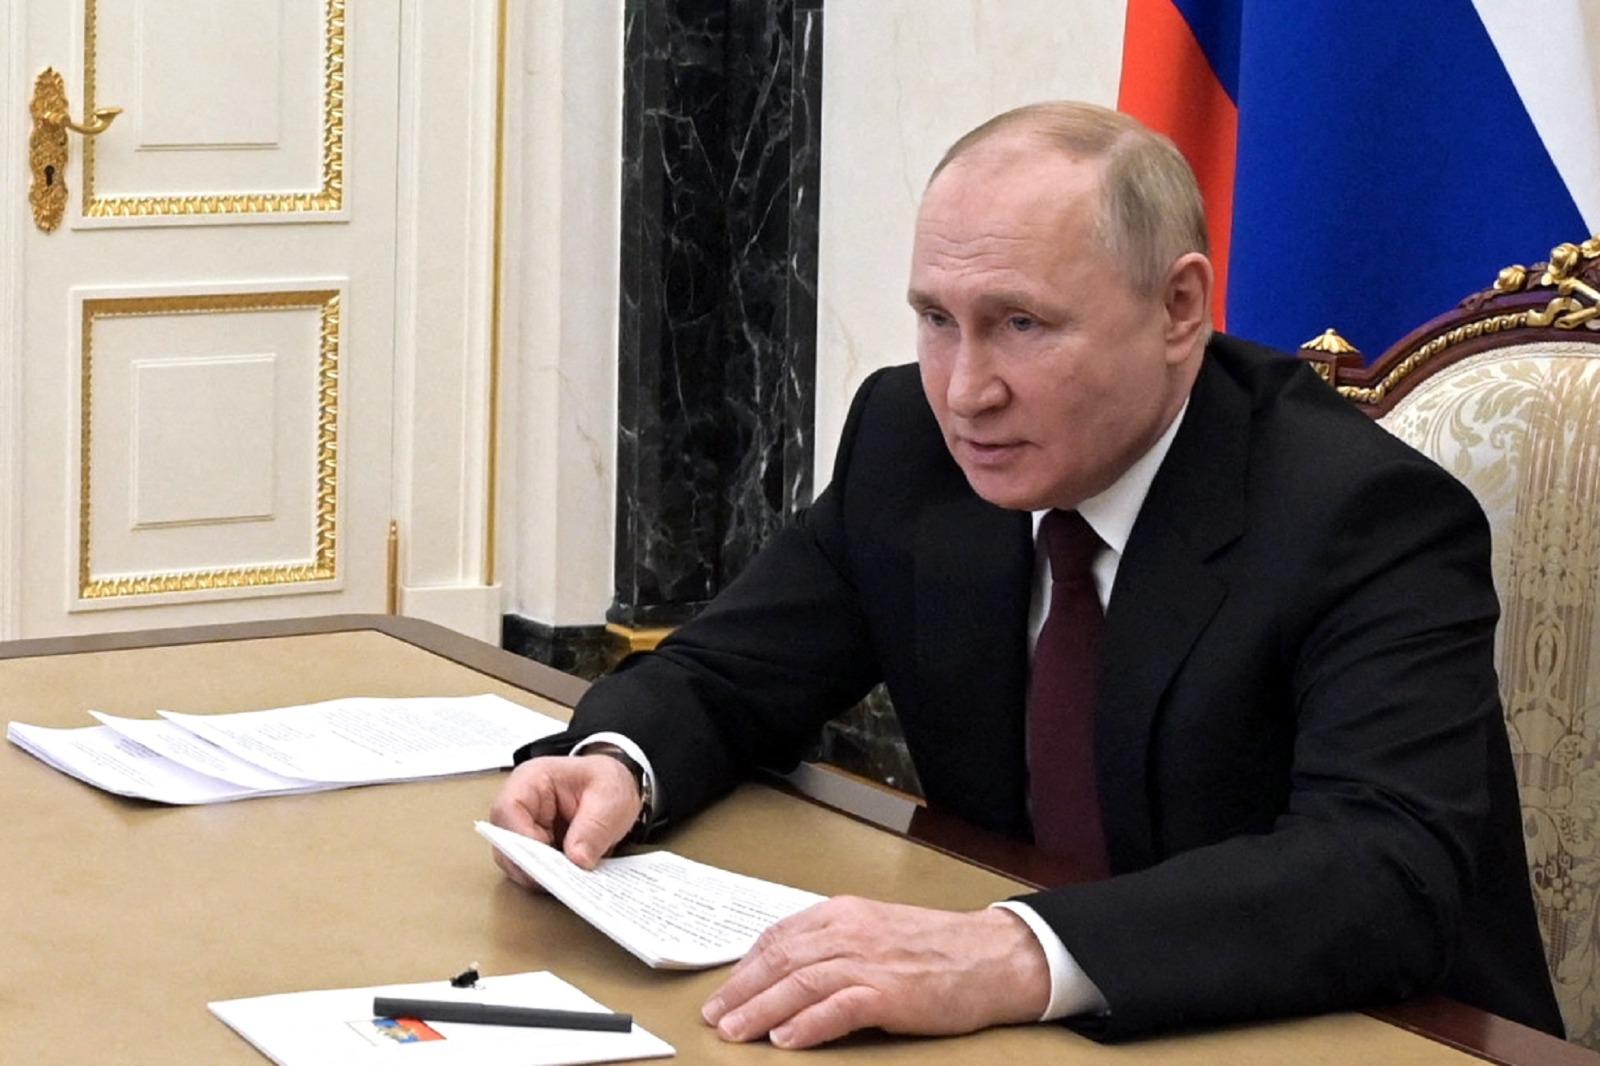 Ucraina-Russia, Putin: "Nostra sicurezza non negoziabile"